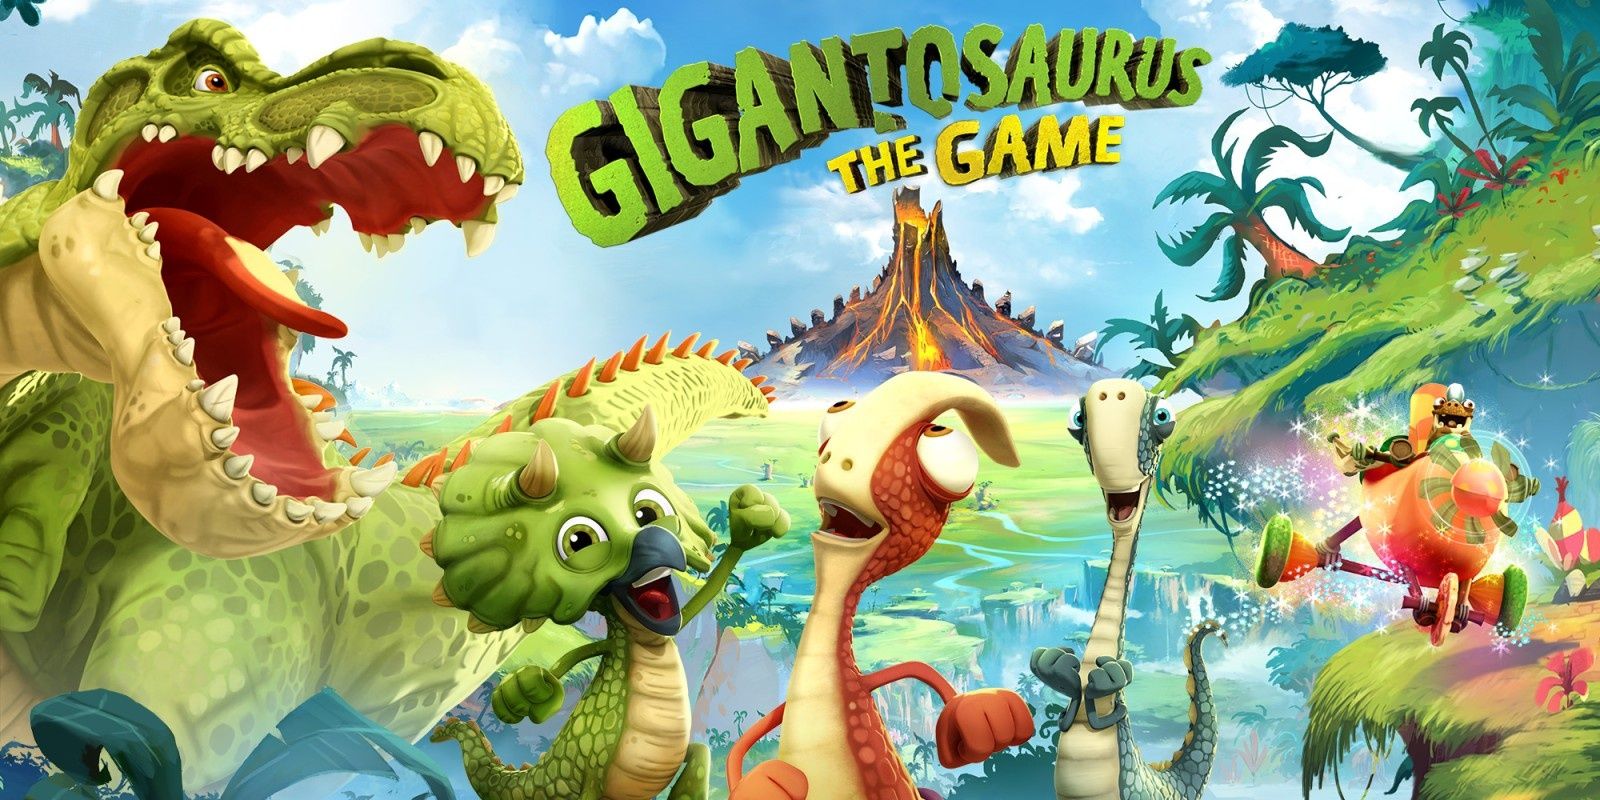 Giantosaur The Game